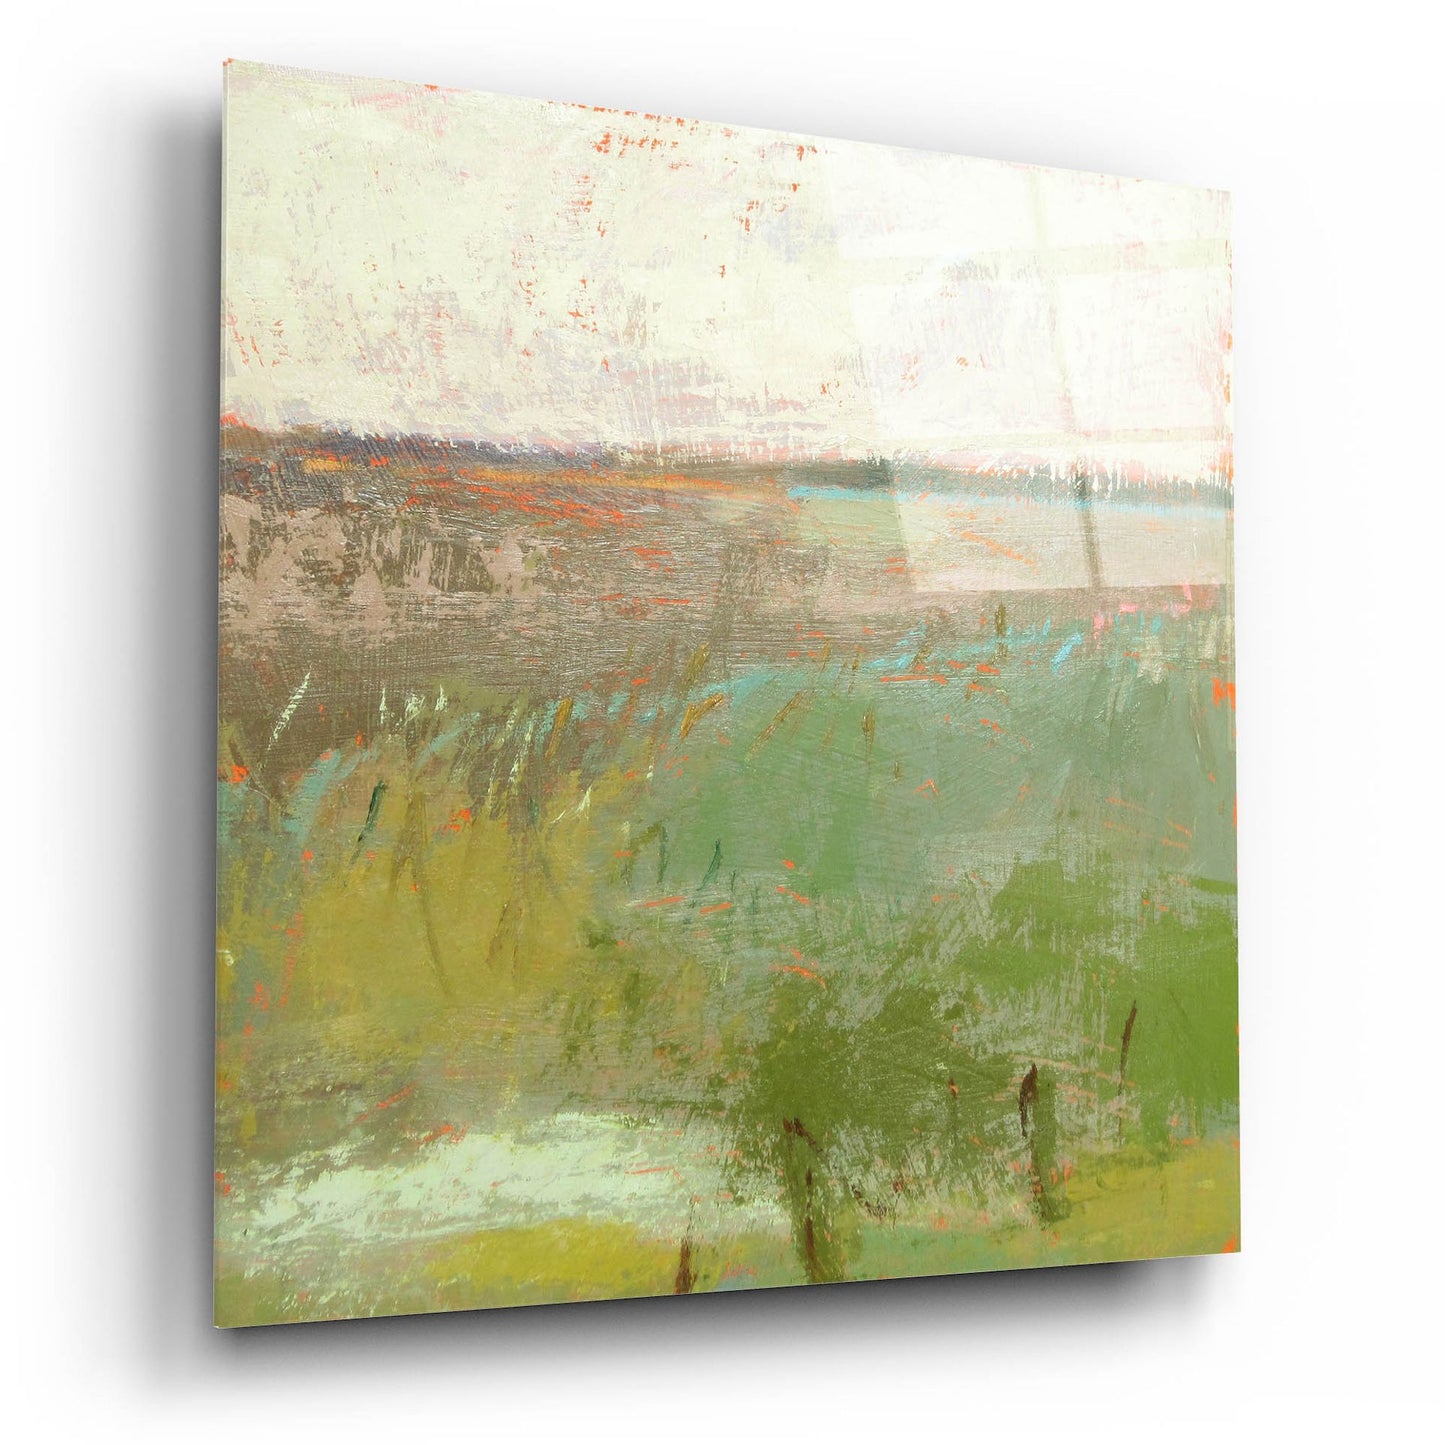 Epic Art ' Landscape II' by Jane Schmidt, Acrylic Glass Wall Art,12x12